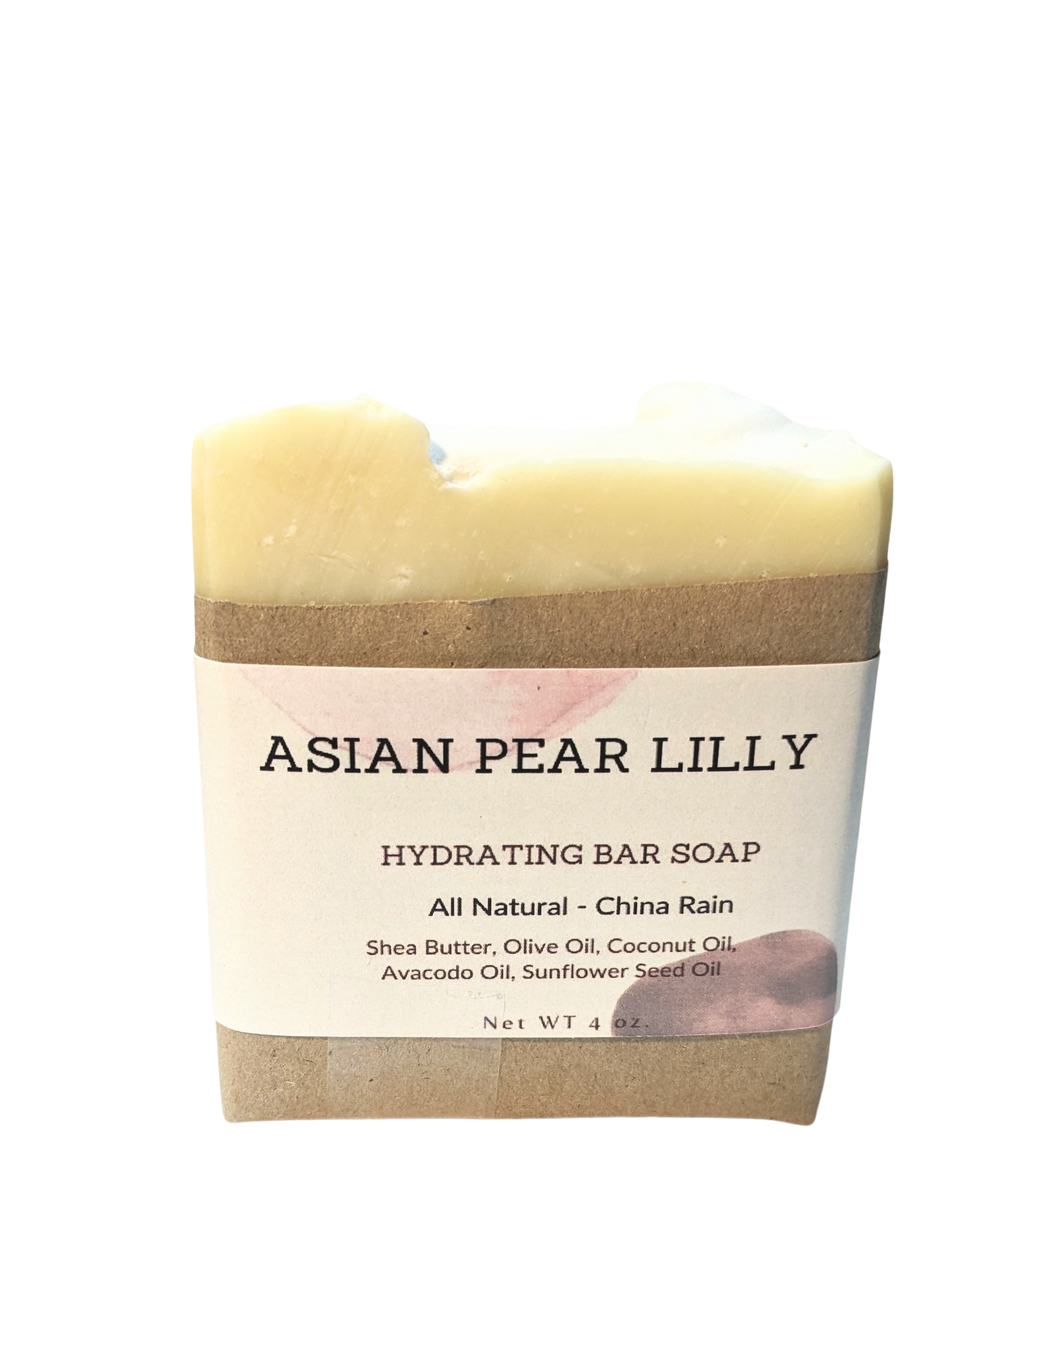 Asian Pear, Lily Hydrating Bath Bar